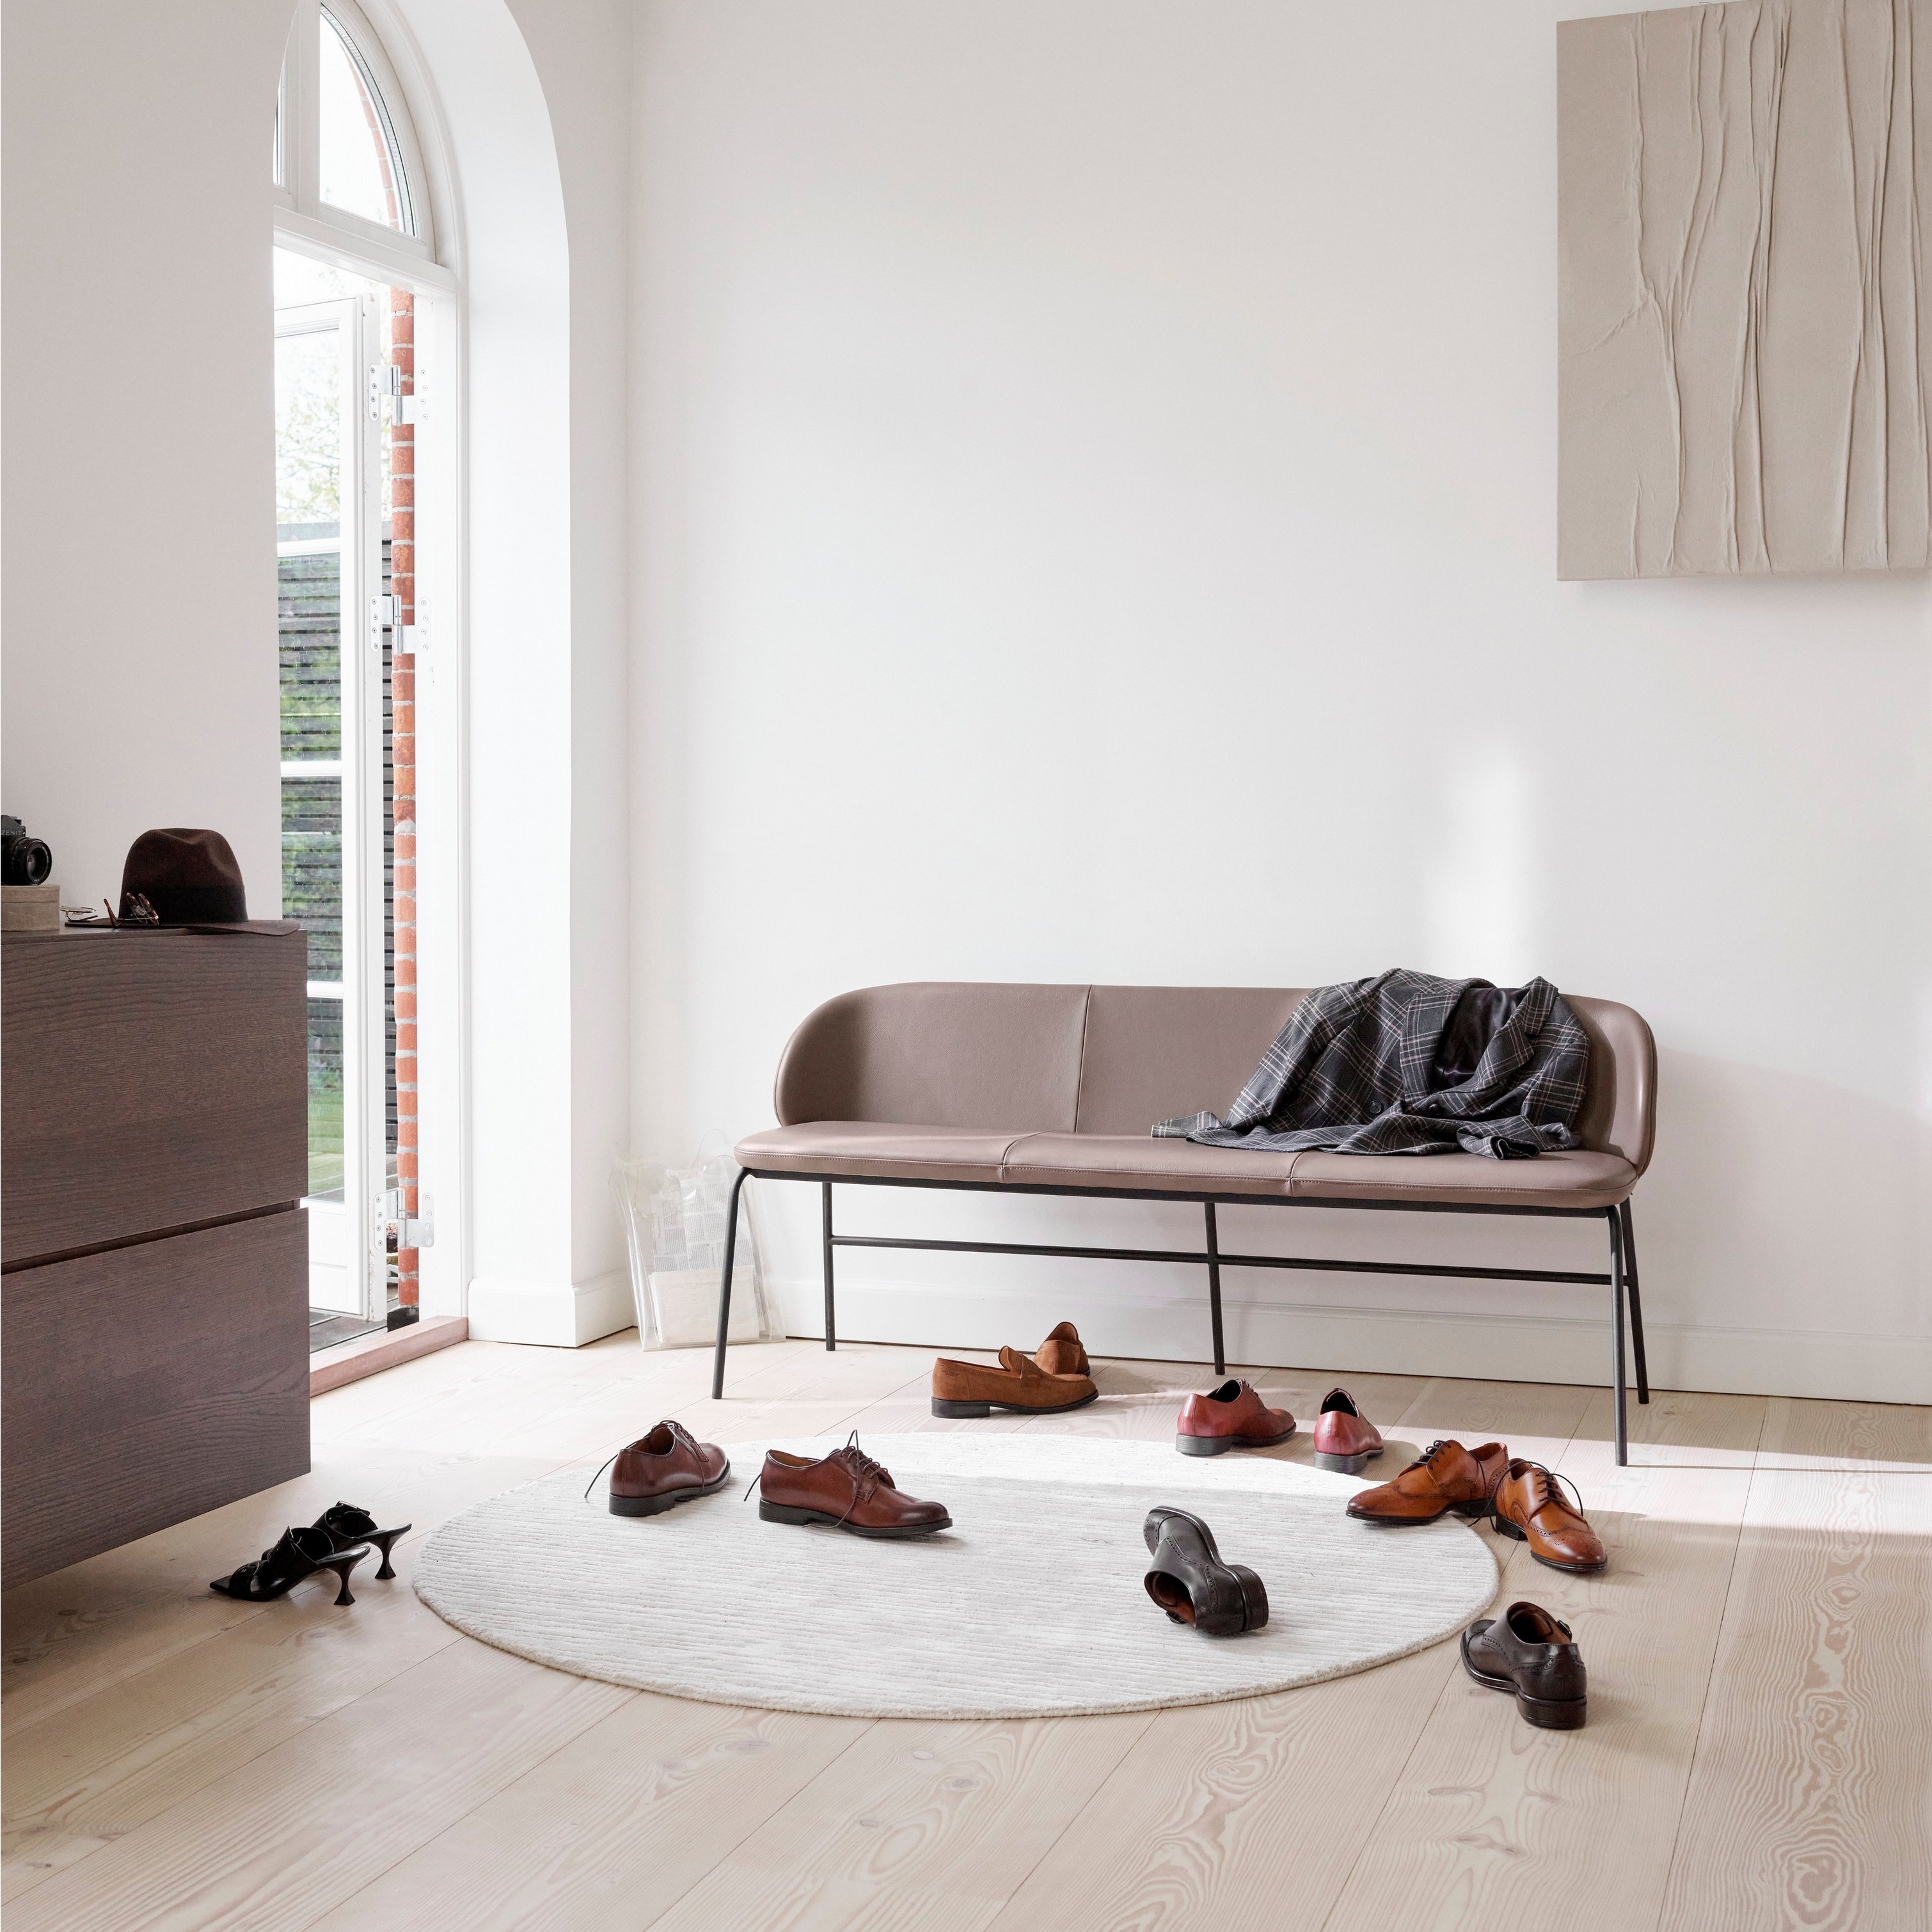 Kožená lavica v svetlej miestnosti s oblúkovitým oknom, topánkami na podlahe a dreveným umeleckým dielom.